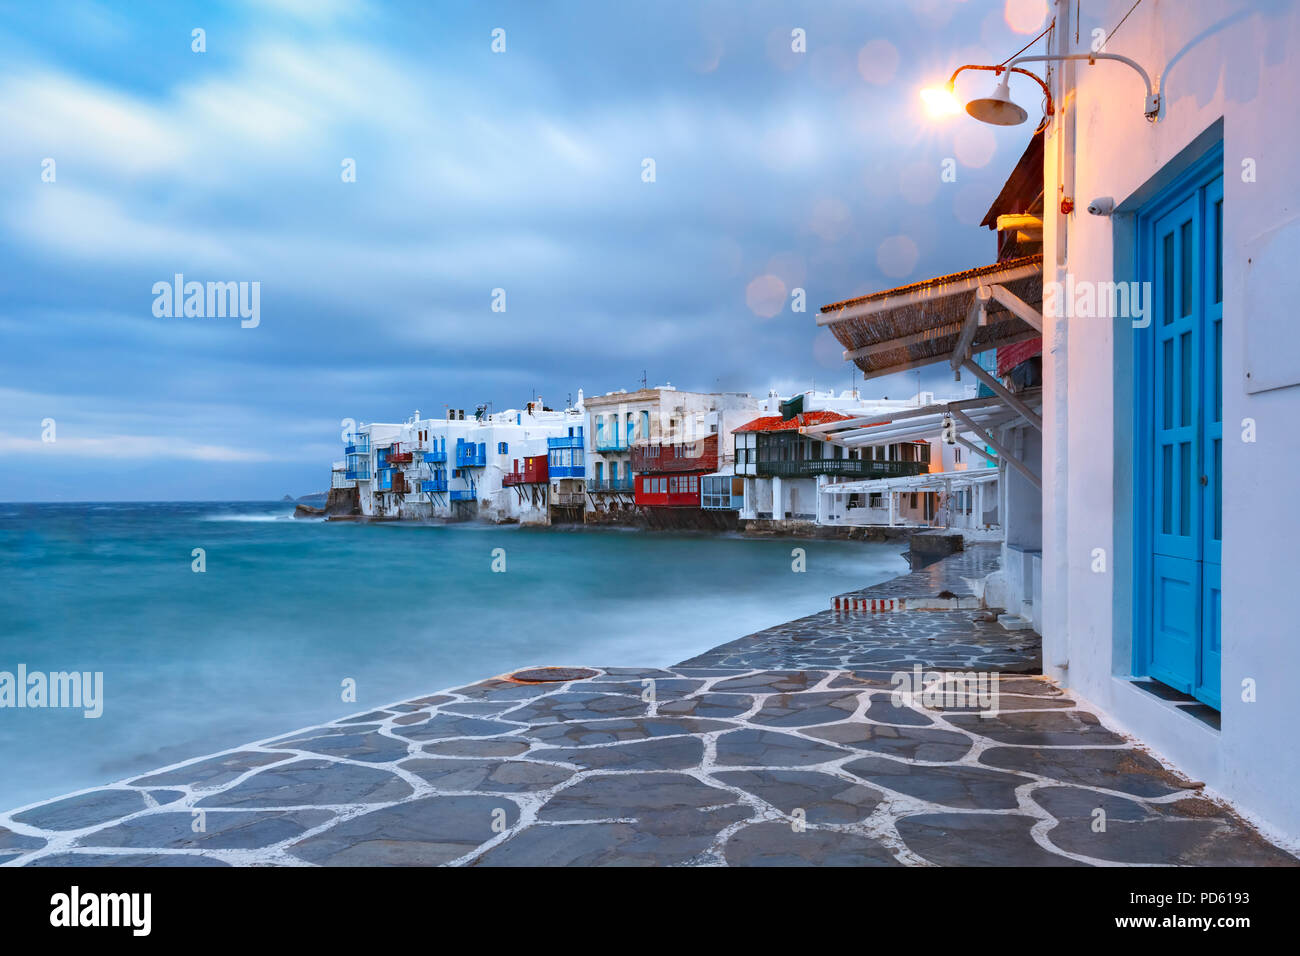 La petite Venise sur l'île de Mykonos, Grèce Banque D'Images